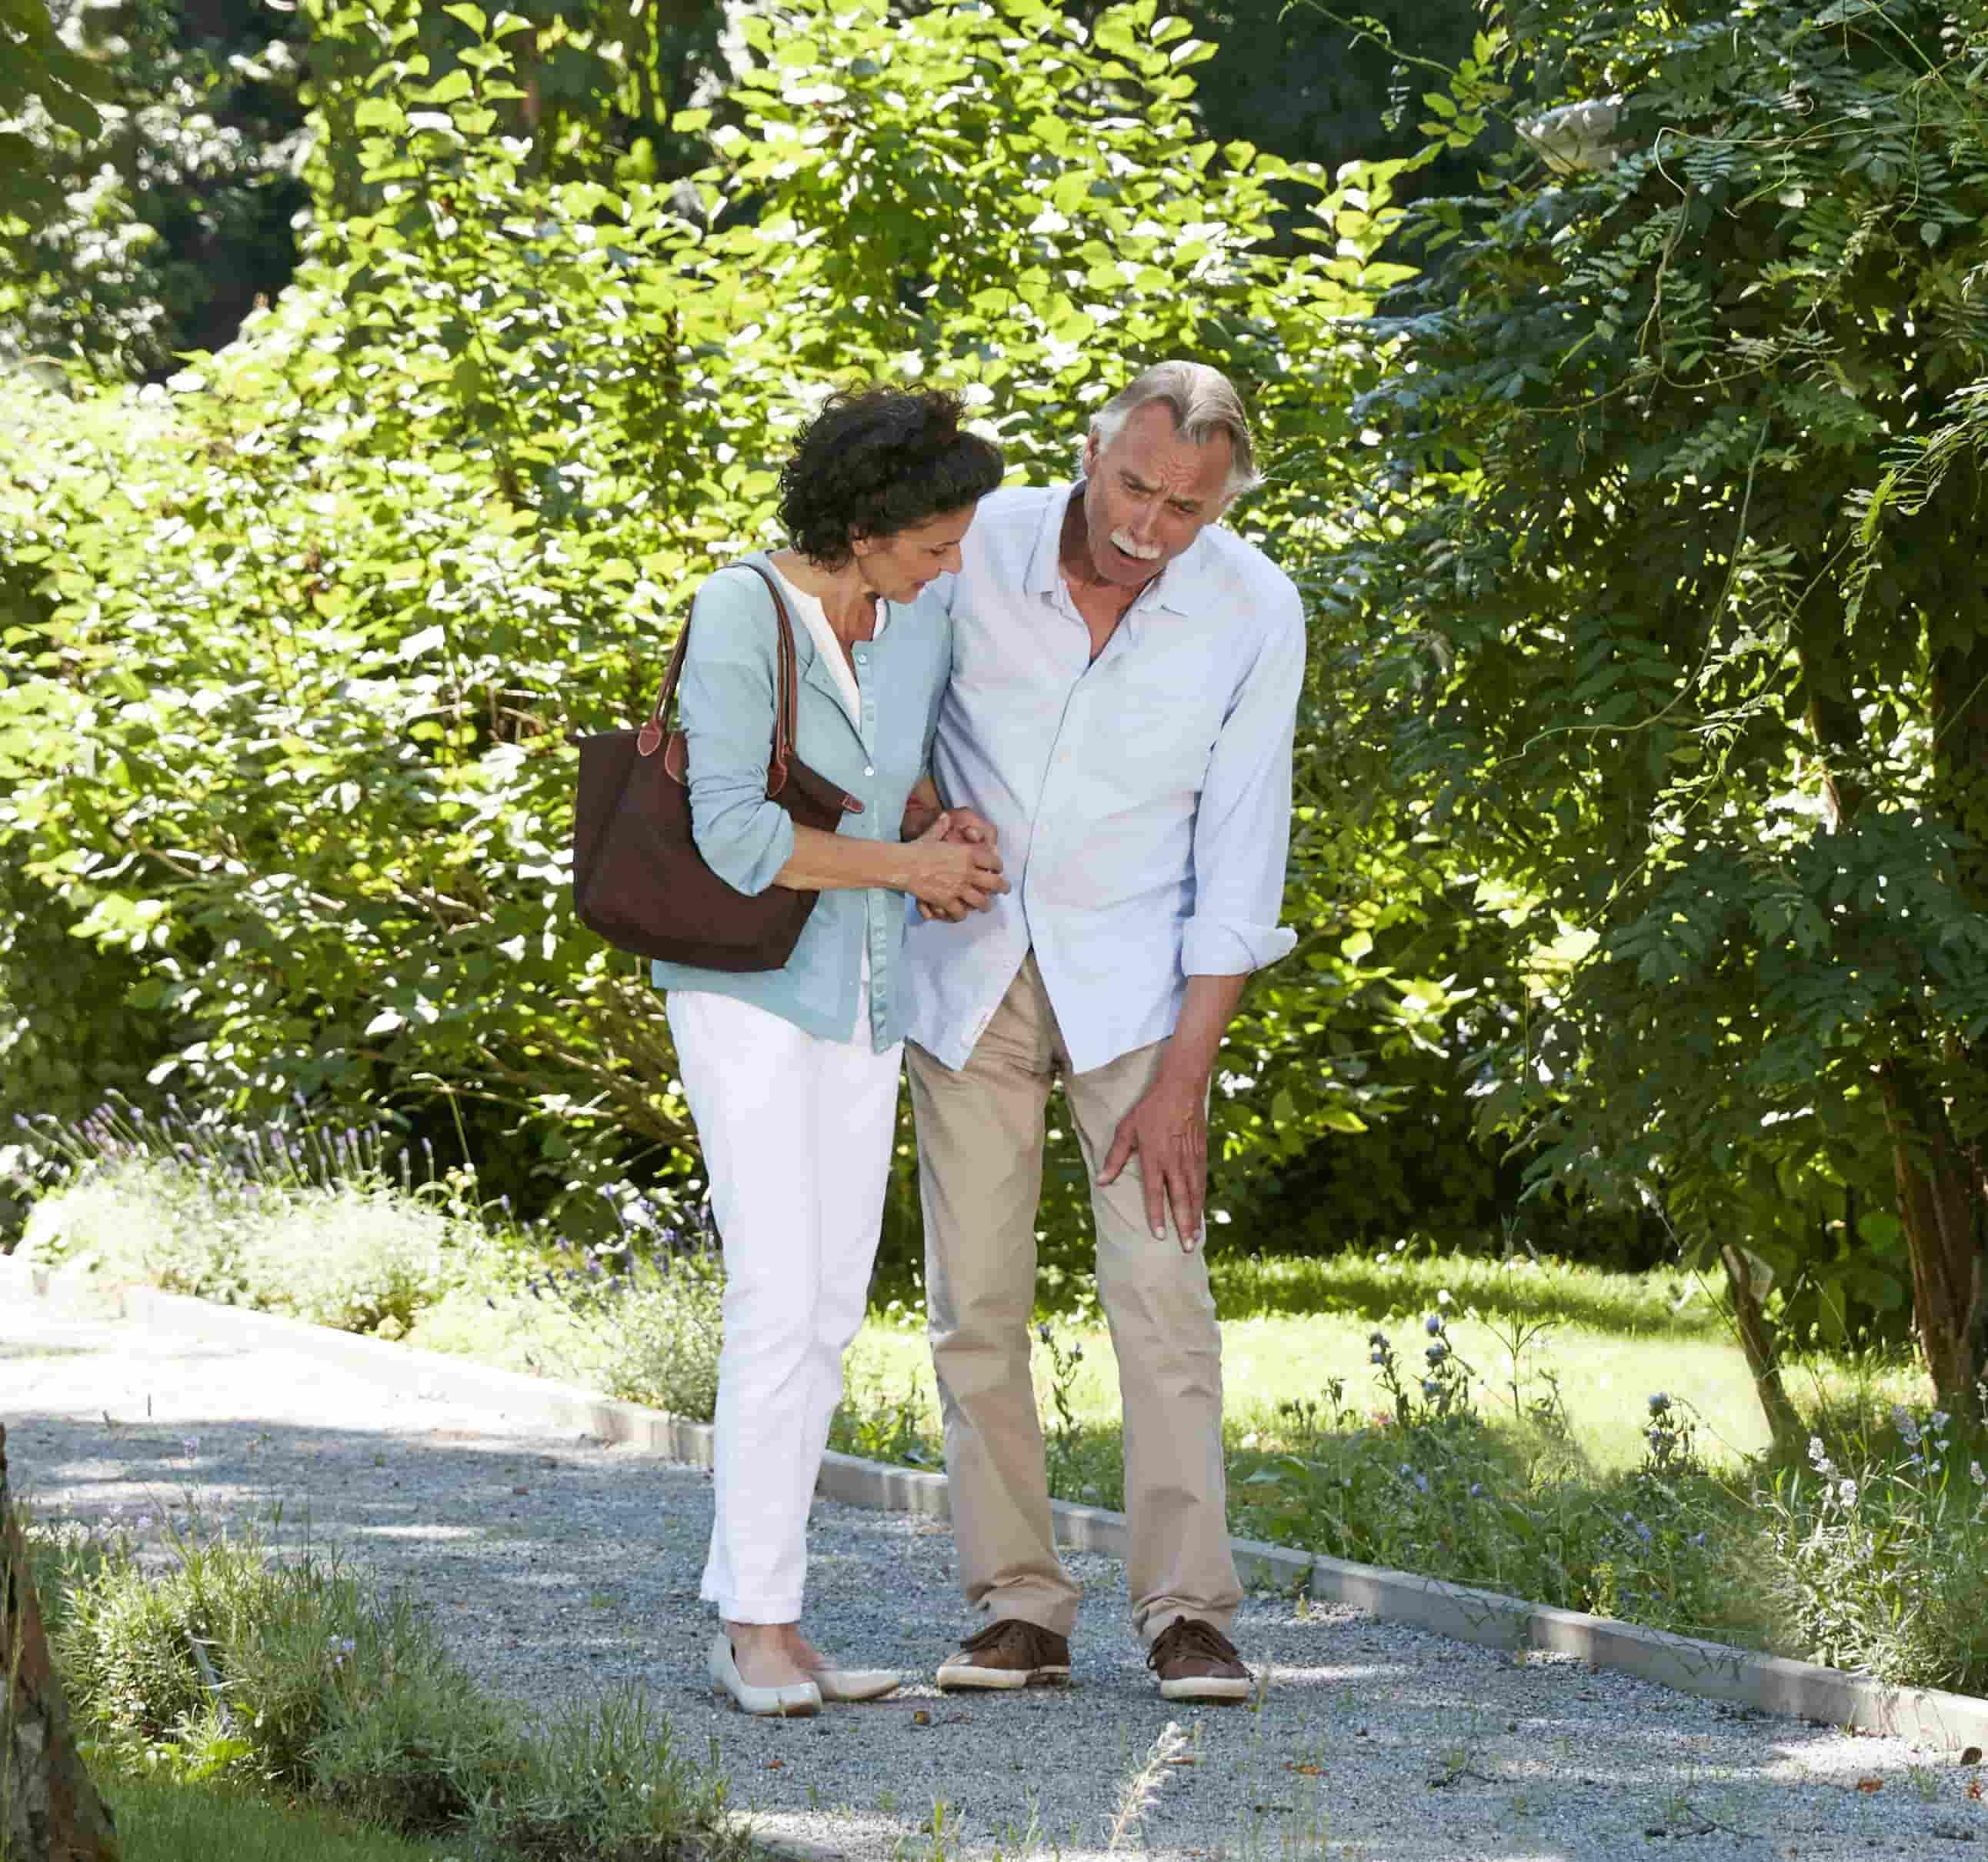 A imagem mostra um homem e uma mulher andando em um parque. O homem, à direita, demonstra estar sentindo dor, enquanto a mulher, à esquerda, o ampara.